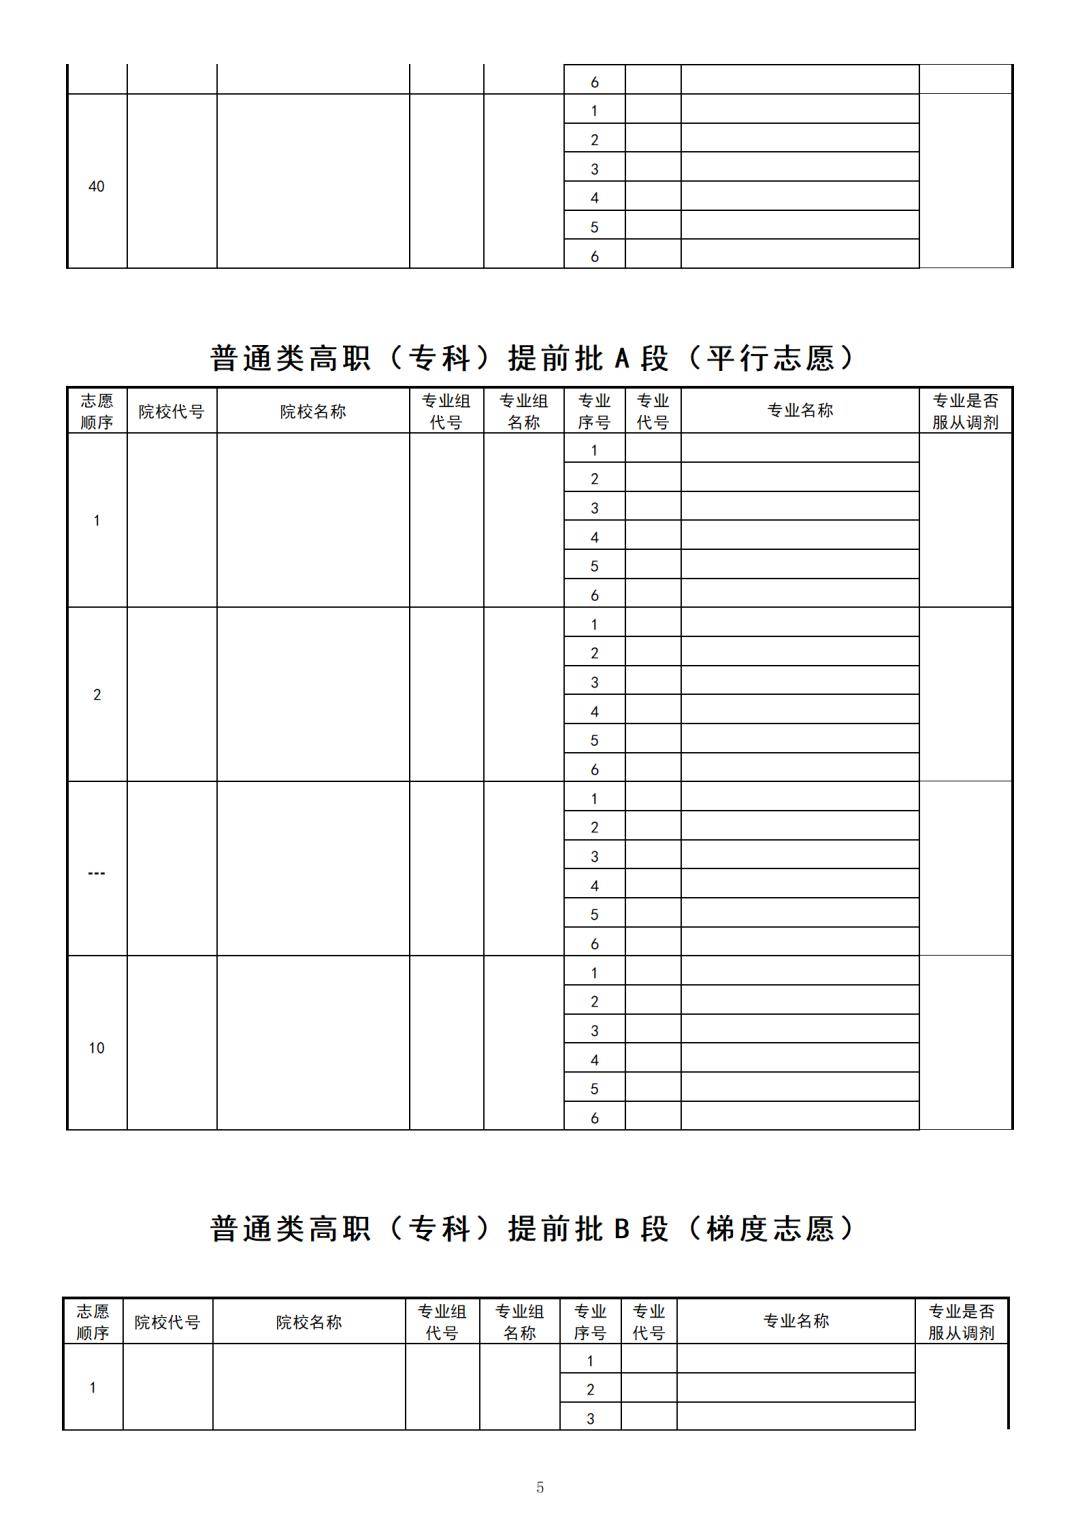 黑龙江高考志愿表样本图片